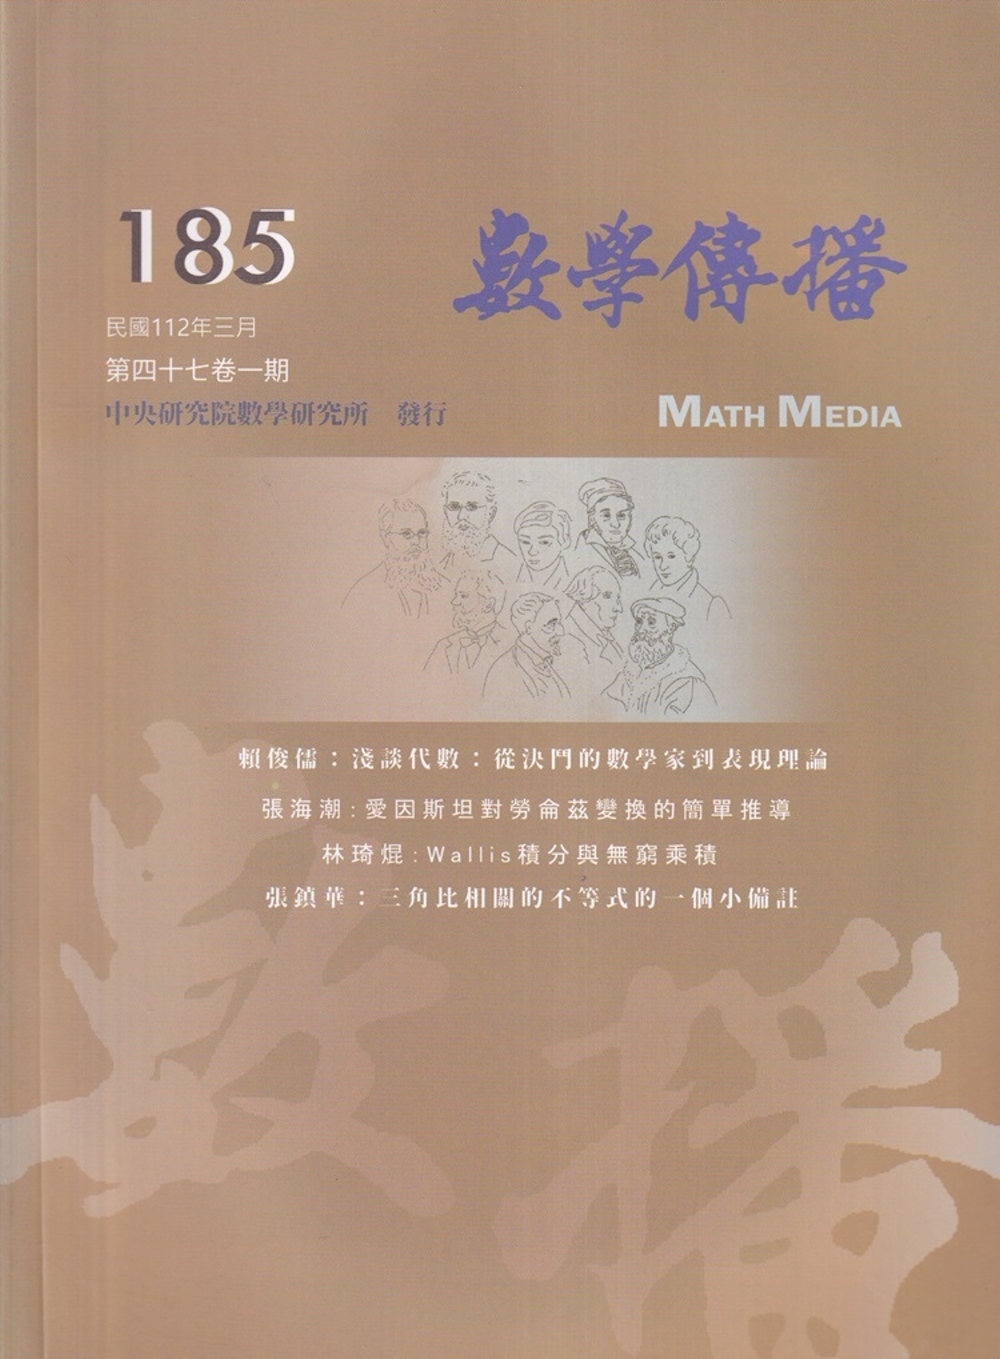 數學傳播季刊185期第47卷1期(112/03)